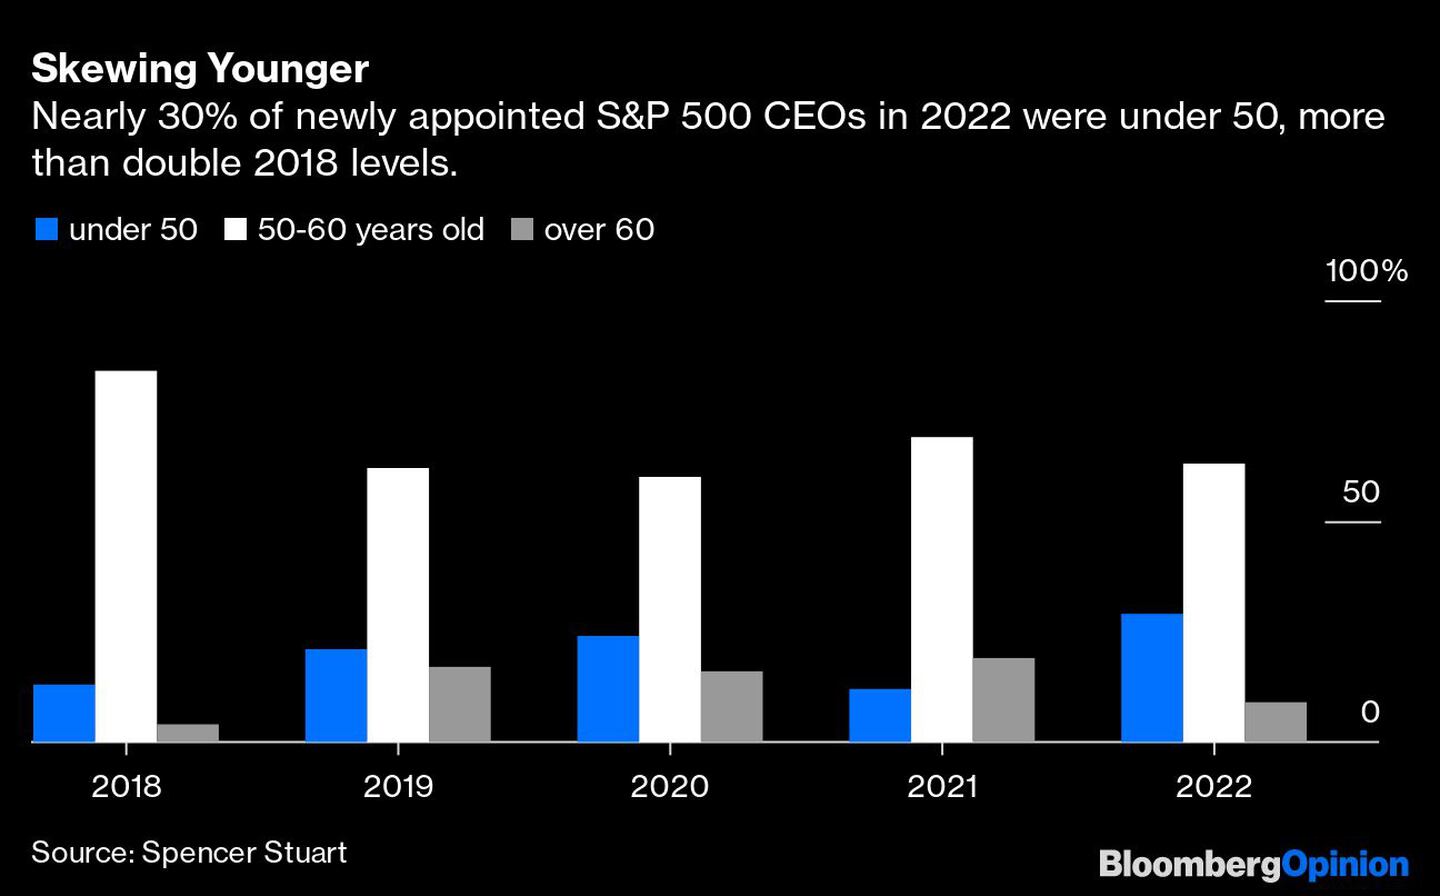 Casi el 30% de los CEO recién nombrados de S&P 500 en 2022 tenían menos de 50 años, más del doble de los niveles de 2018.dfd